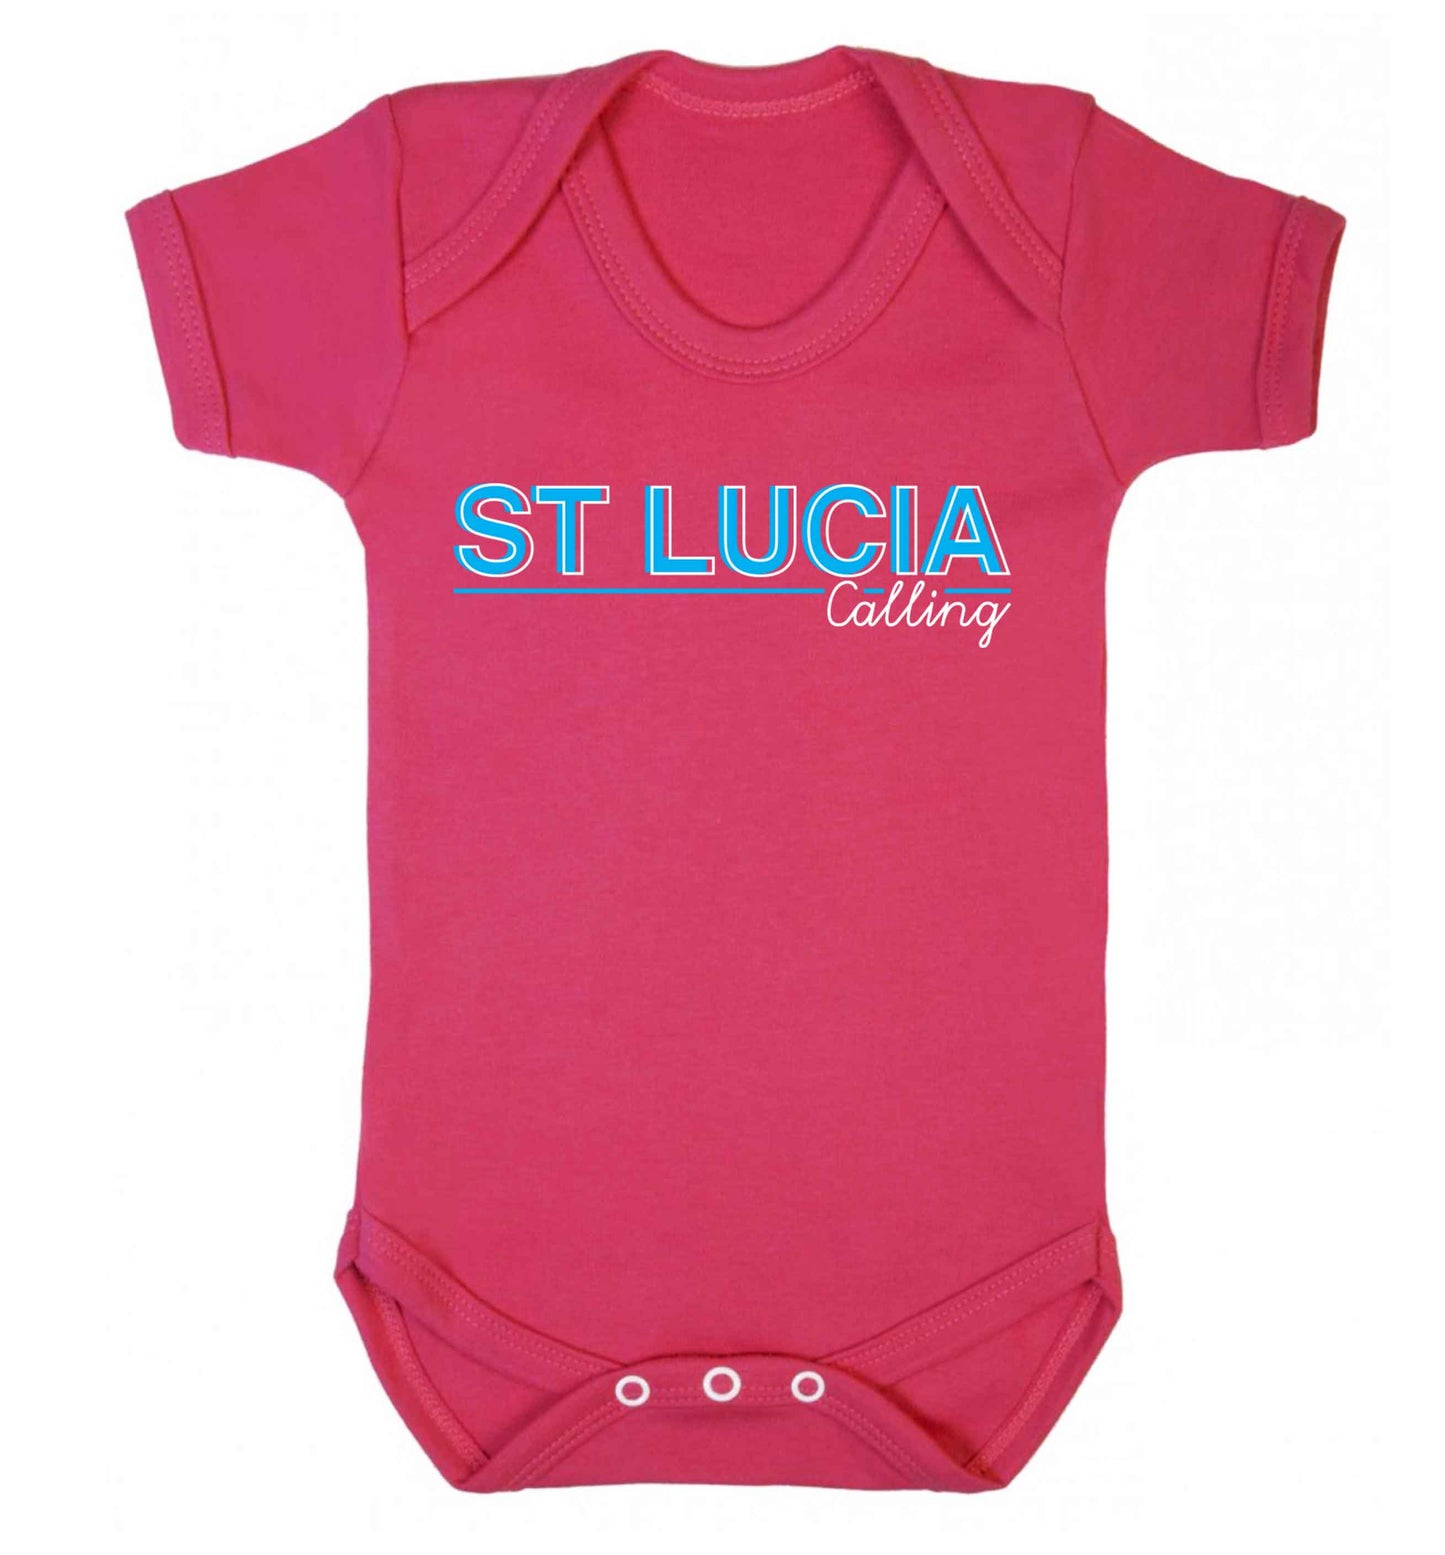 St Lucia calling Baby Vest dark pink 18-24 months